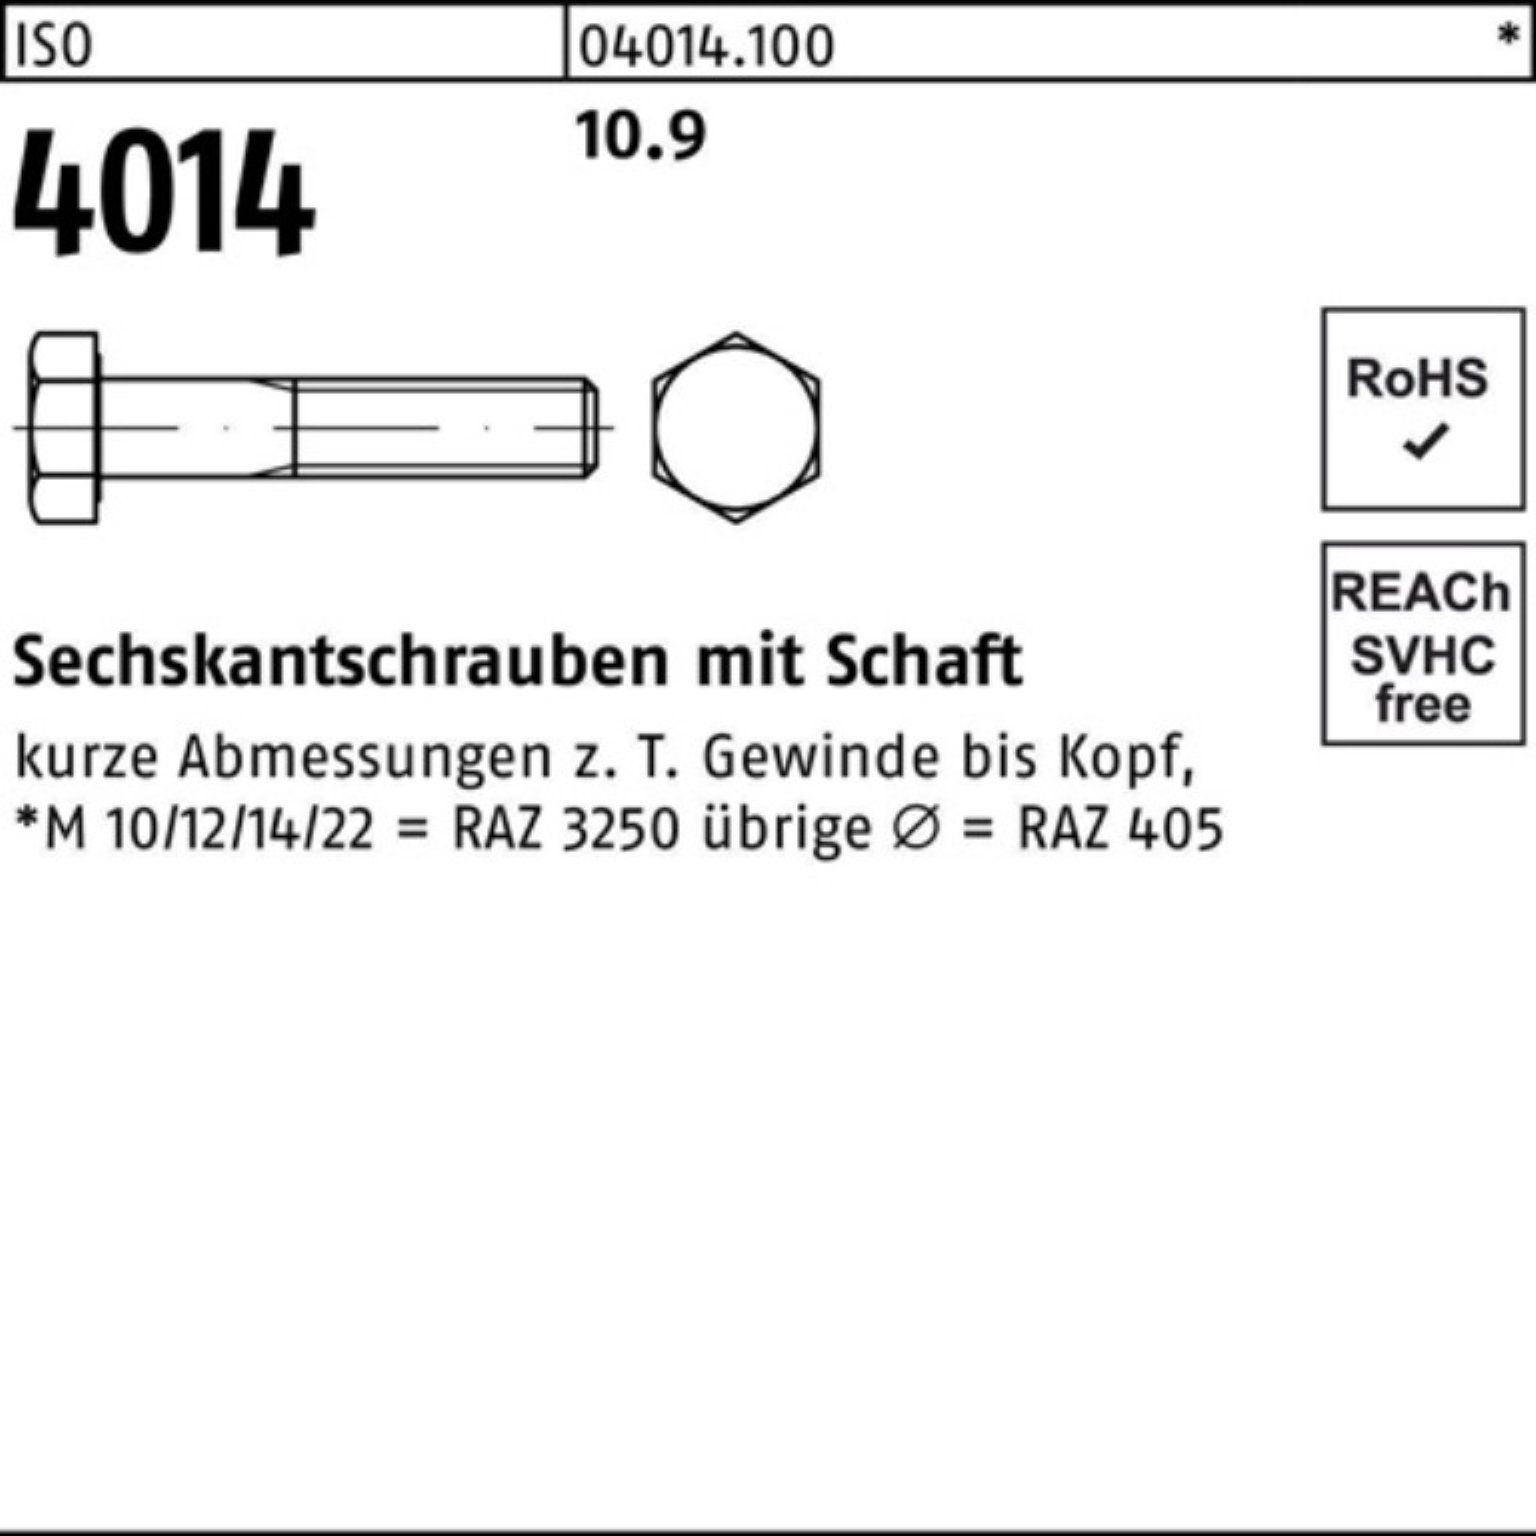 Sechskantschraube Sechskantschraube Bufab 210 1 M30x Stück 4014 Schaft IS 10.9 Pack 100er ISO